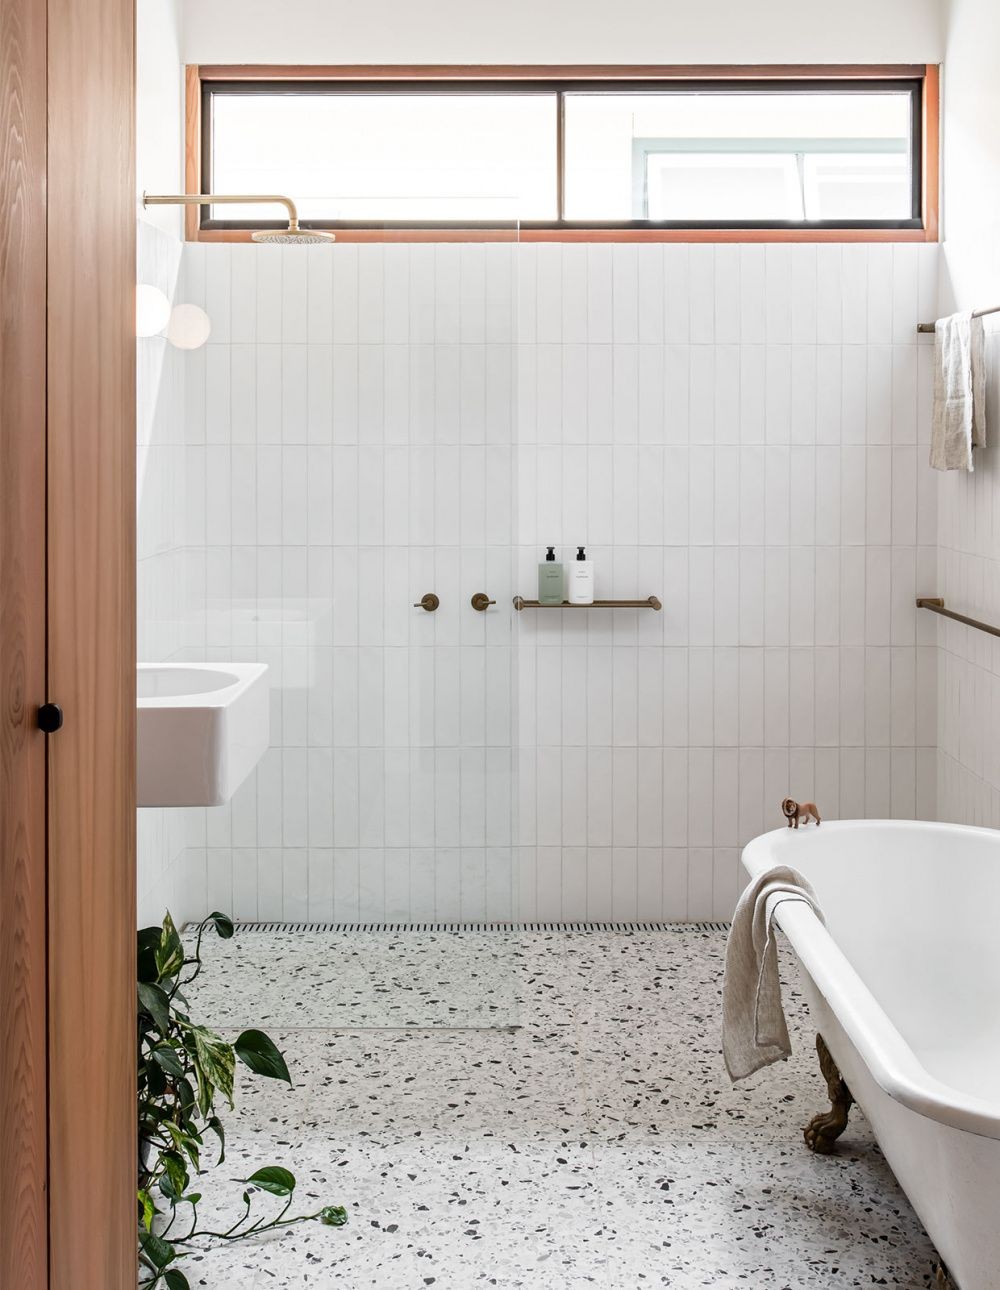 Décor do dia: banheiro com piso de granilite e decoração minimalista (Foto: Divulgação)